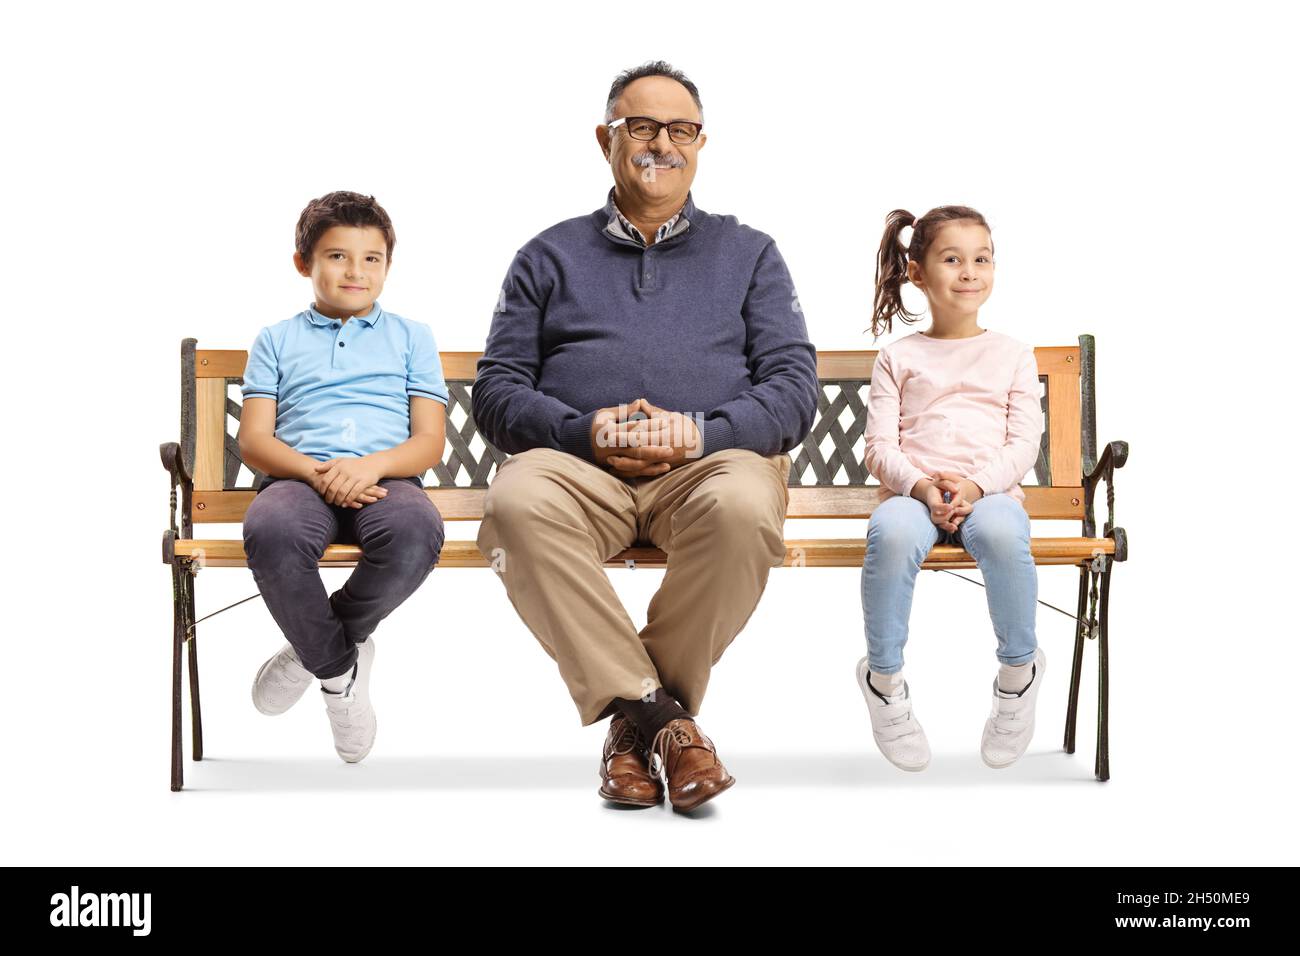 Grand-père avec petits-enfants assis sur un banc isolé sur fond blanc Banque D'Images